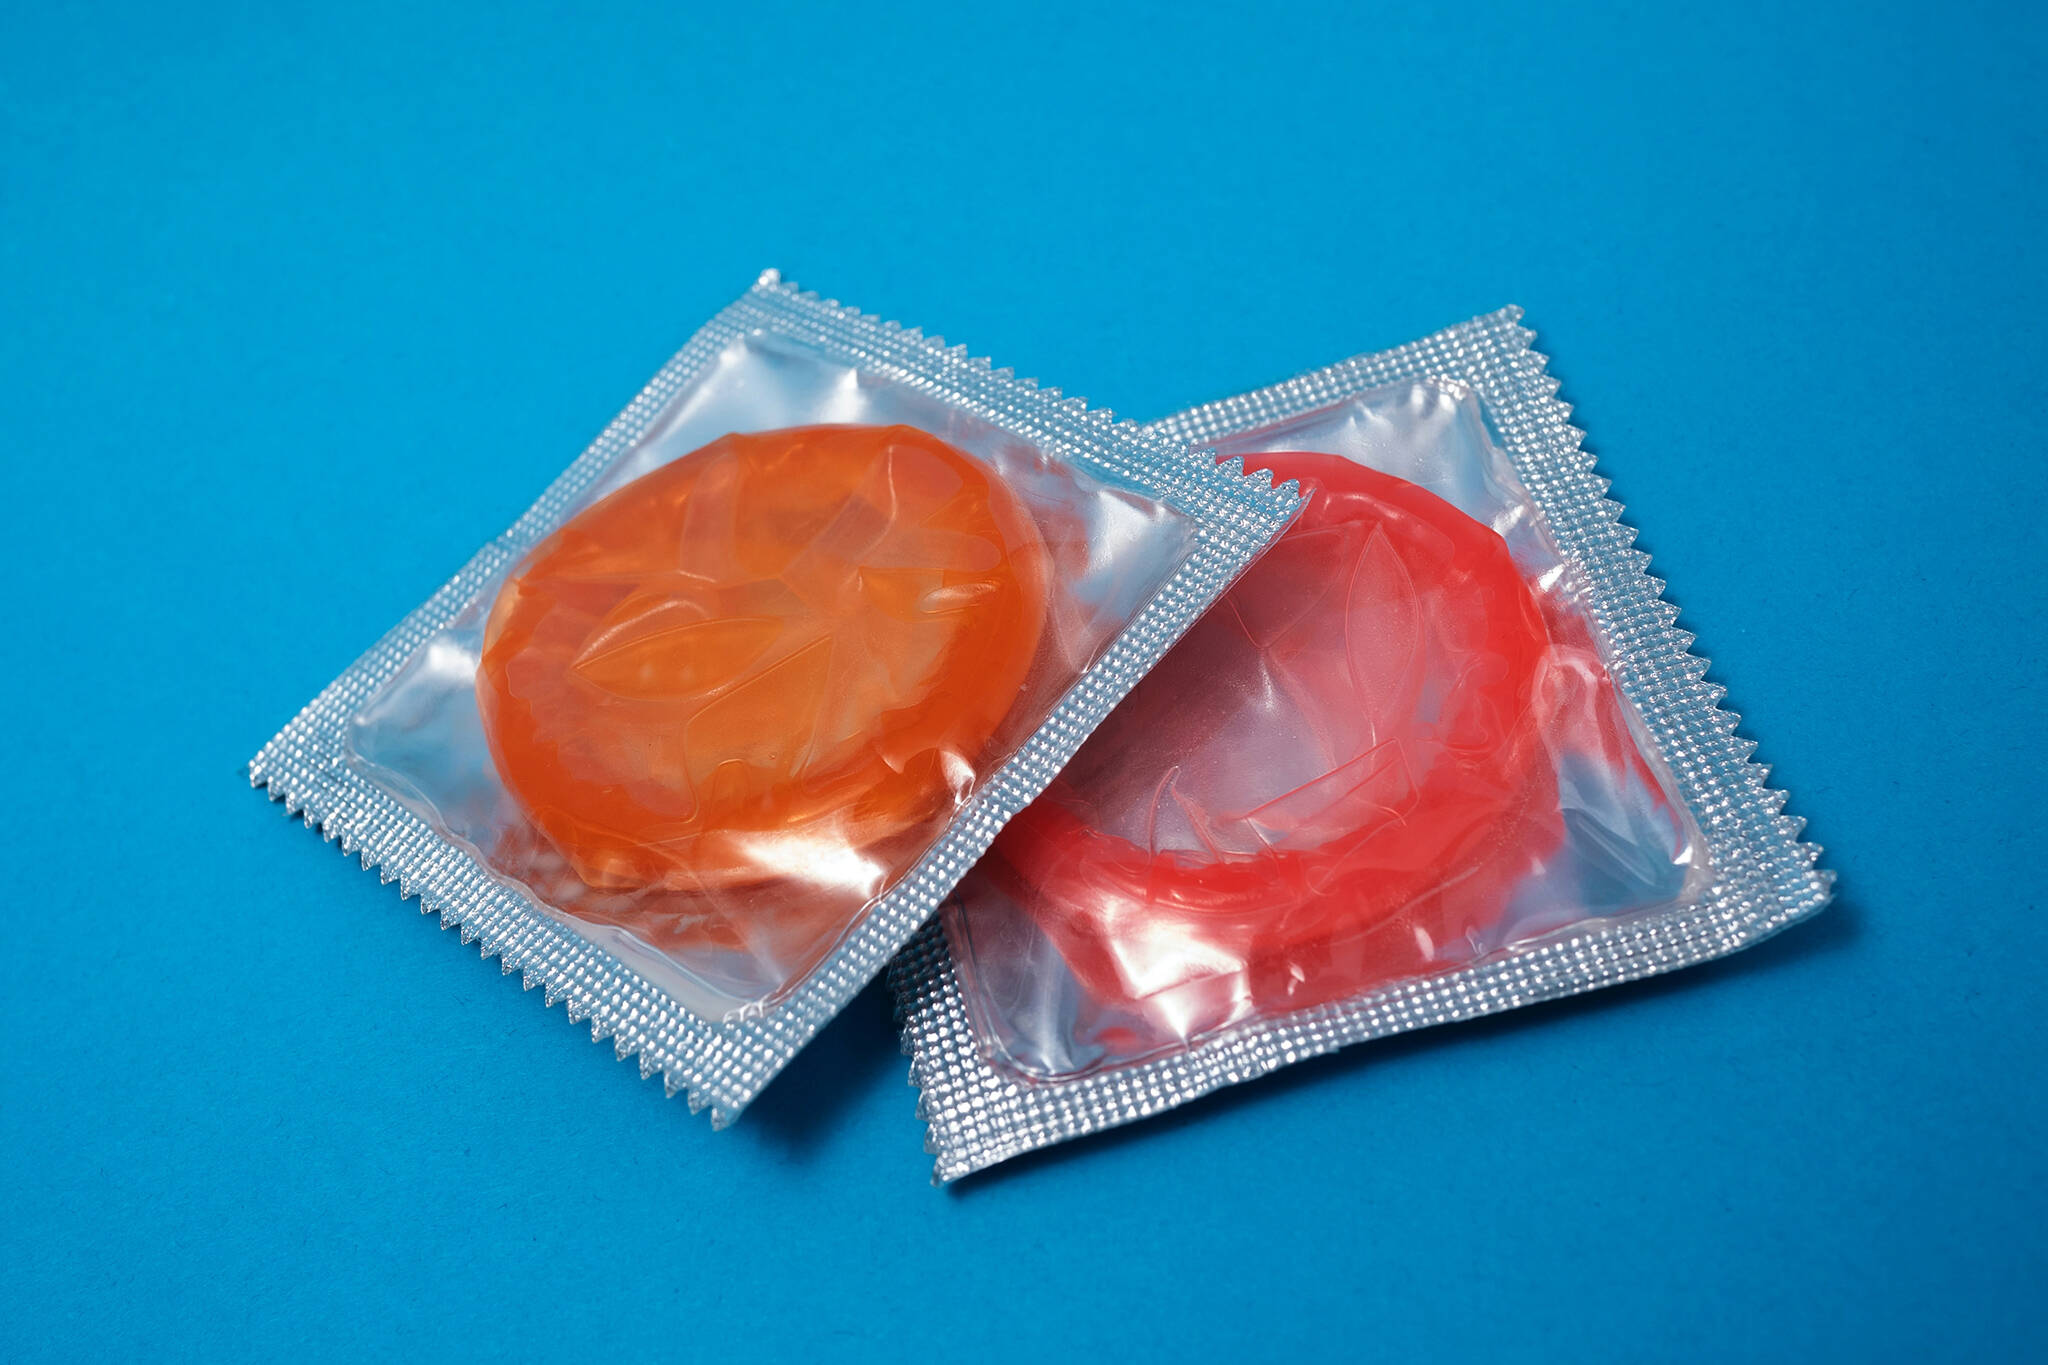 condoms stolen